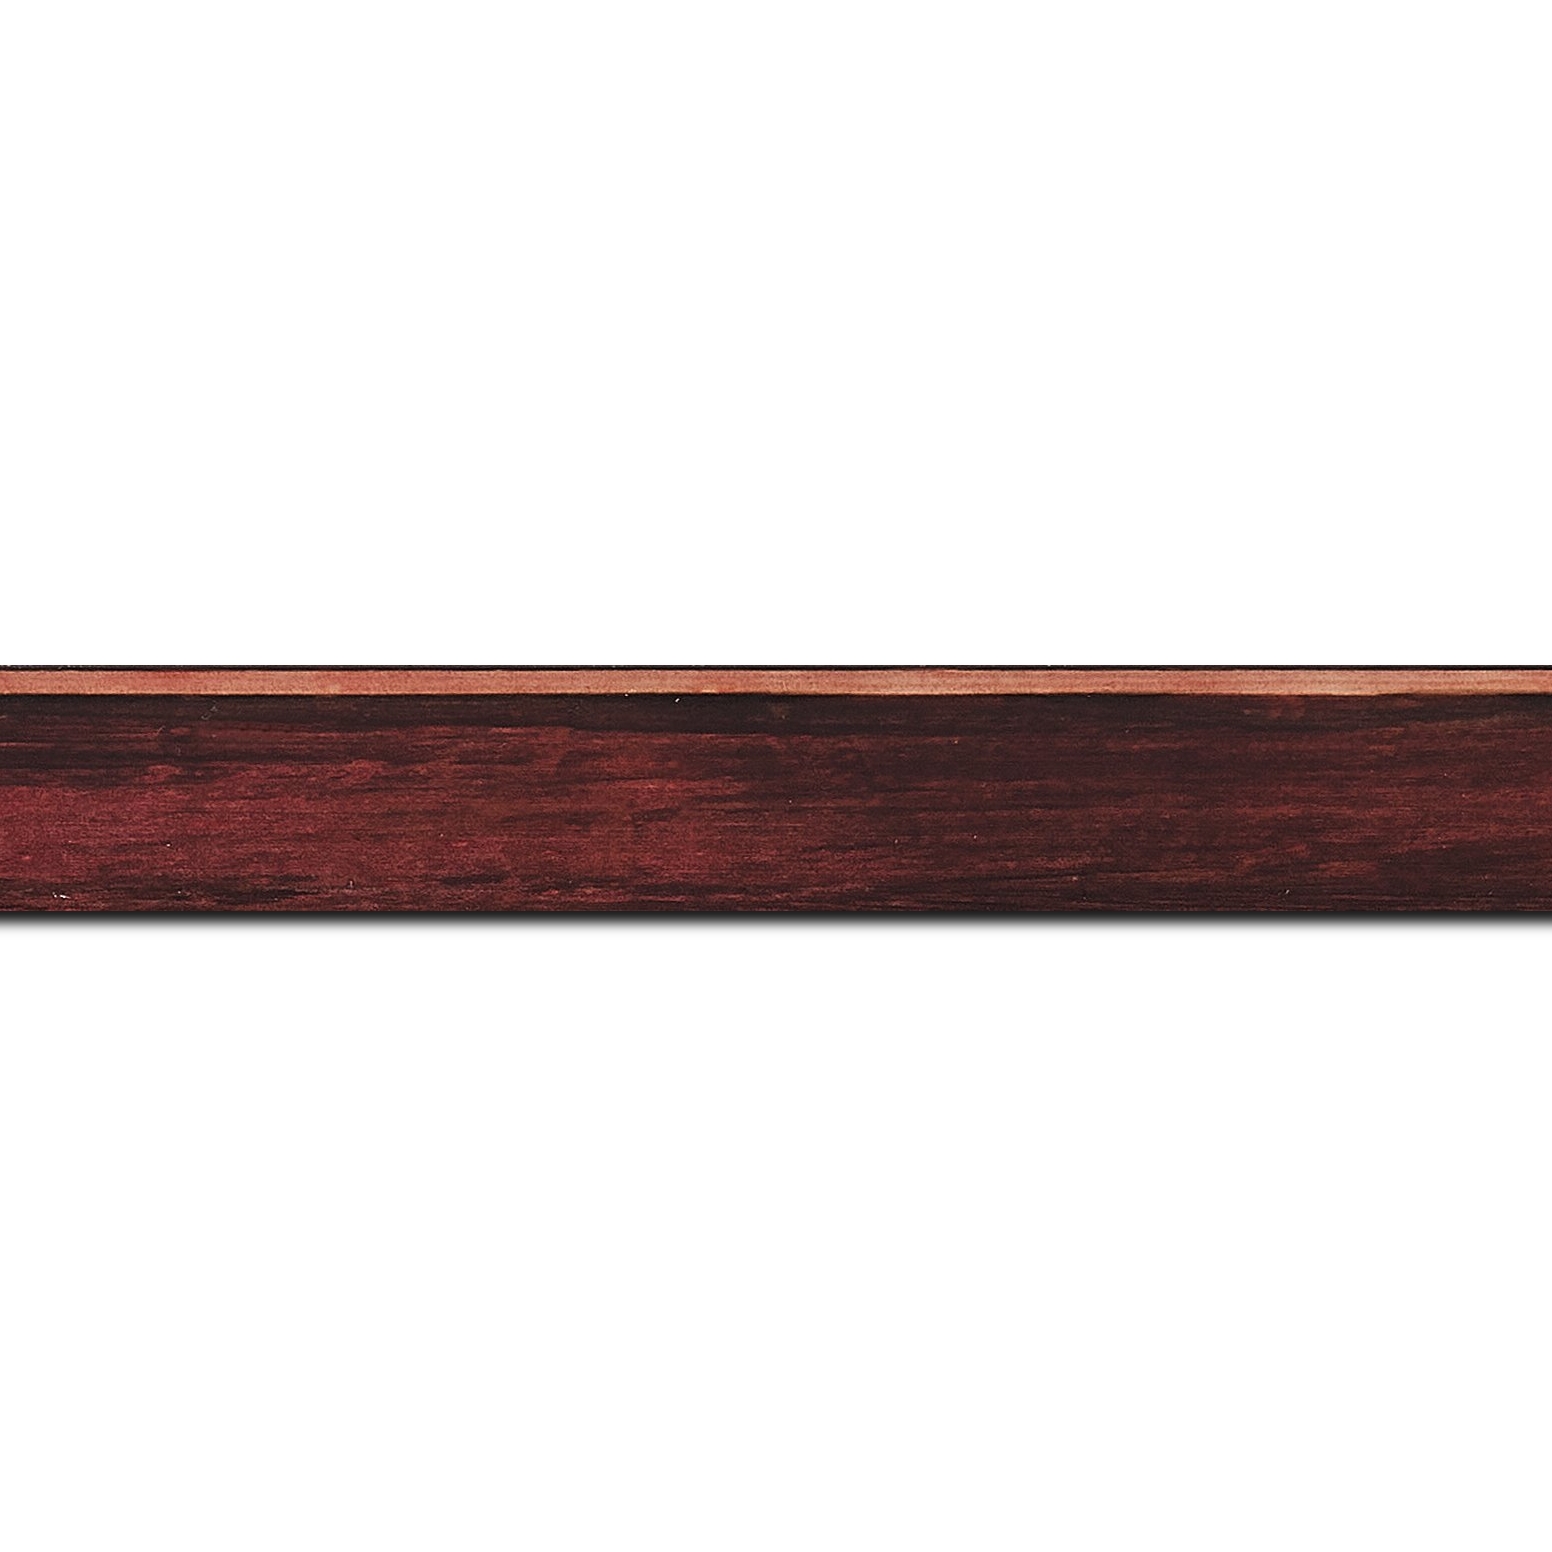 Baguette longueur 1.40m bois profil arrondi en pente plongeant largeur 2.4cm couleur bordeaux effet ressuyé, angle du cadre extérieur filet naturel